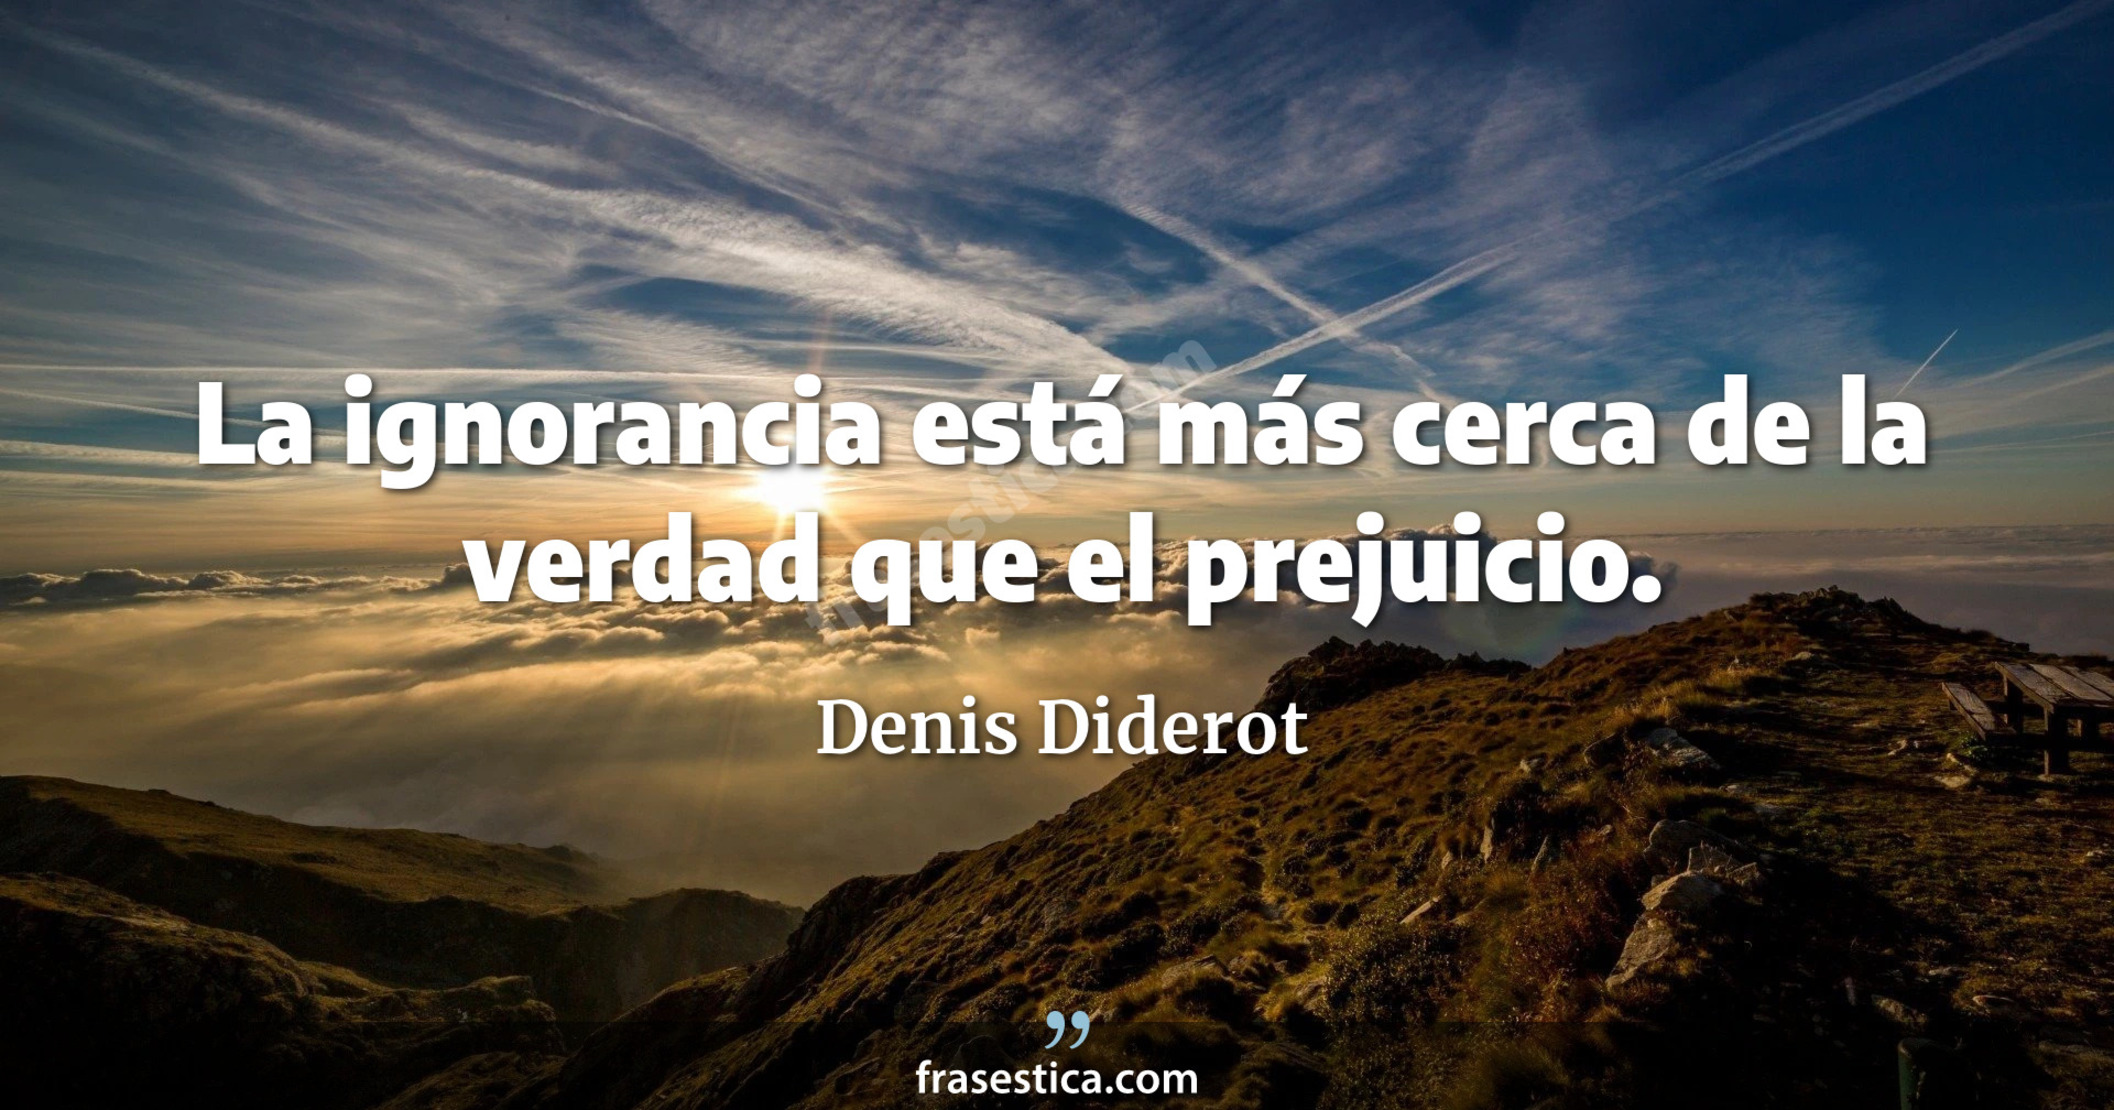 La ignorancia está más cerca de la verdad que el prejuicio. - Denis Diderot